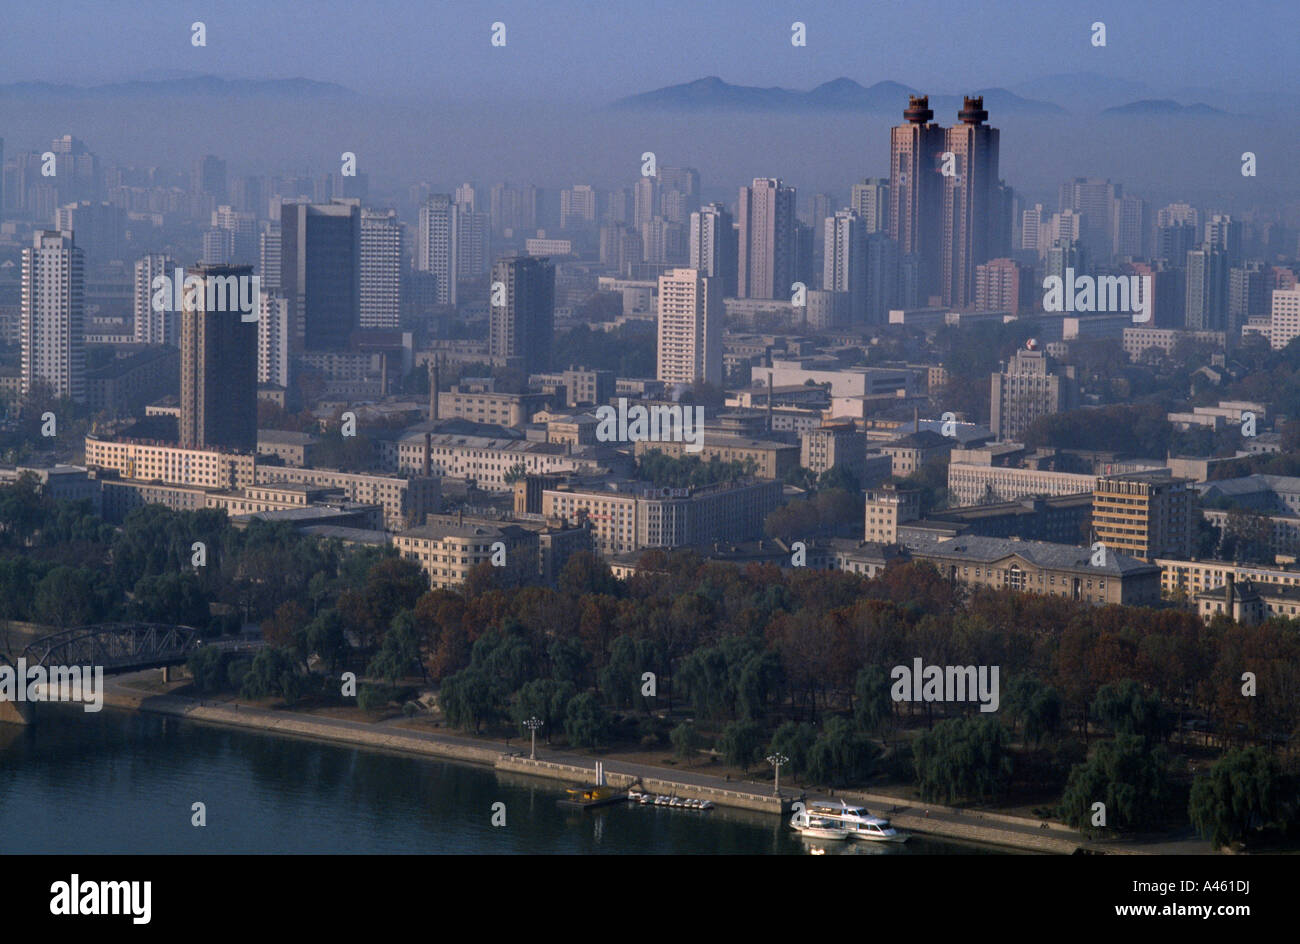 Nordkorea Asien Pjöngjang Stadtbild mit der Koryo-Hotel Twin towers unter anderen Wolkenkratzer mit Smog Umweltverschmutzung Stockfoto